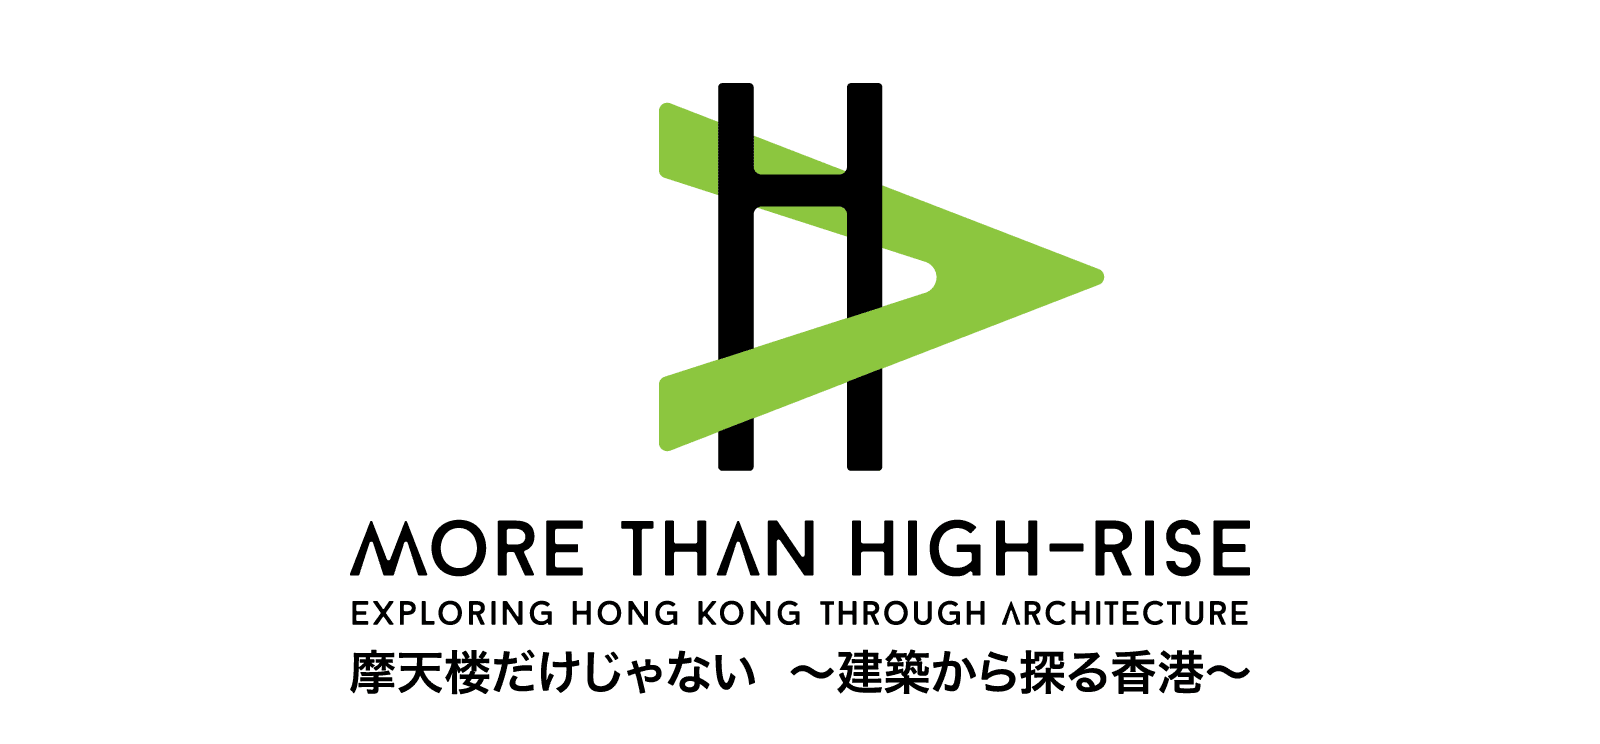 hkia_high_rise